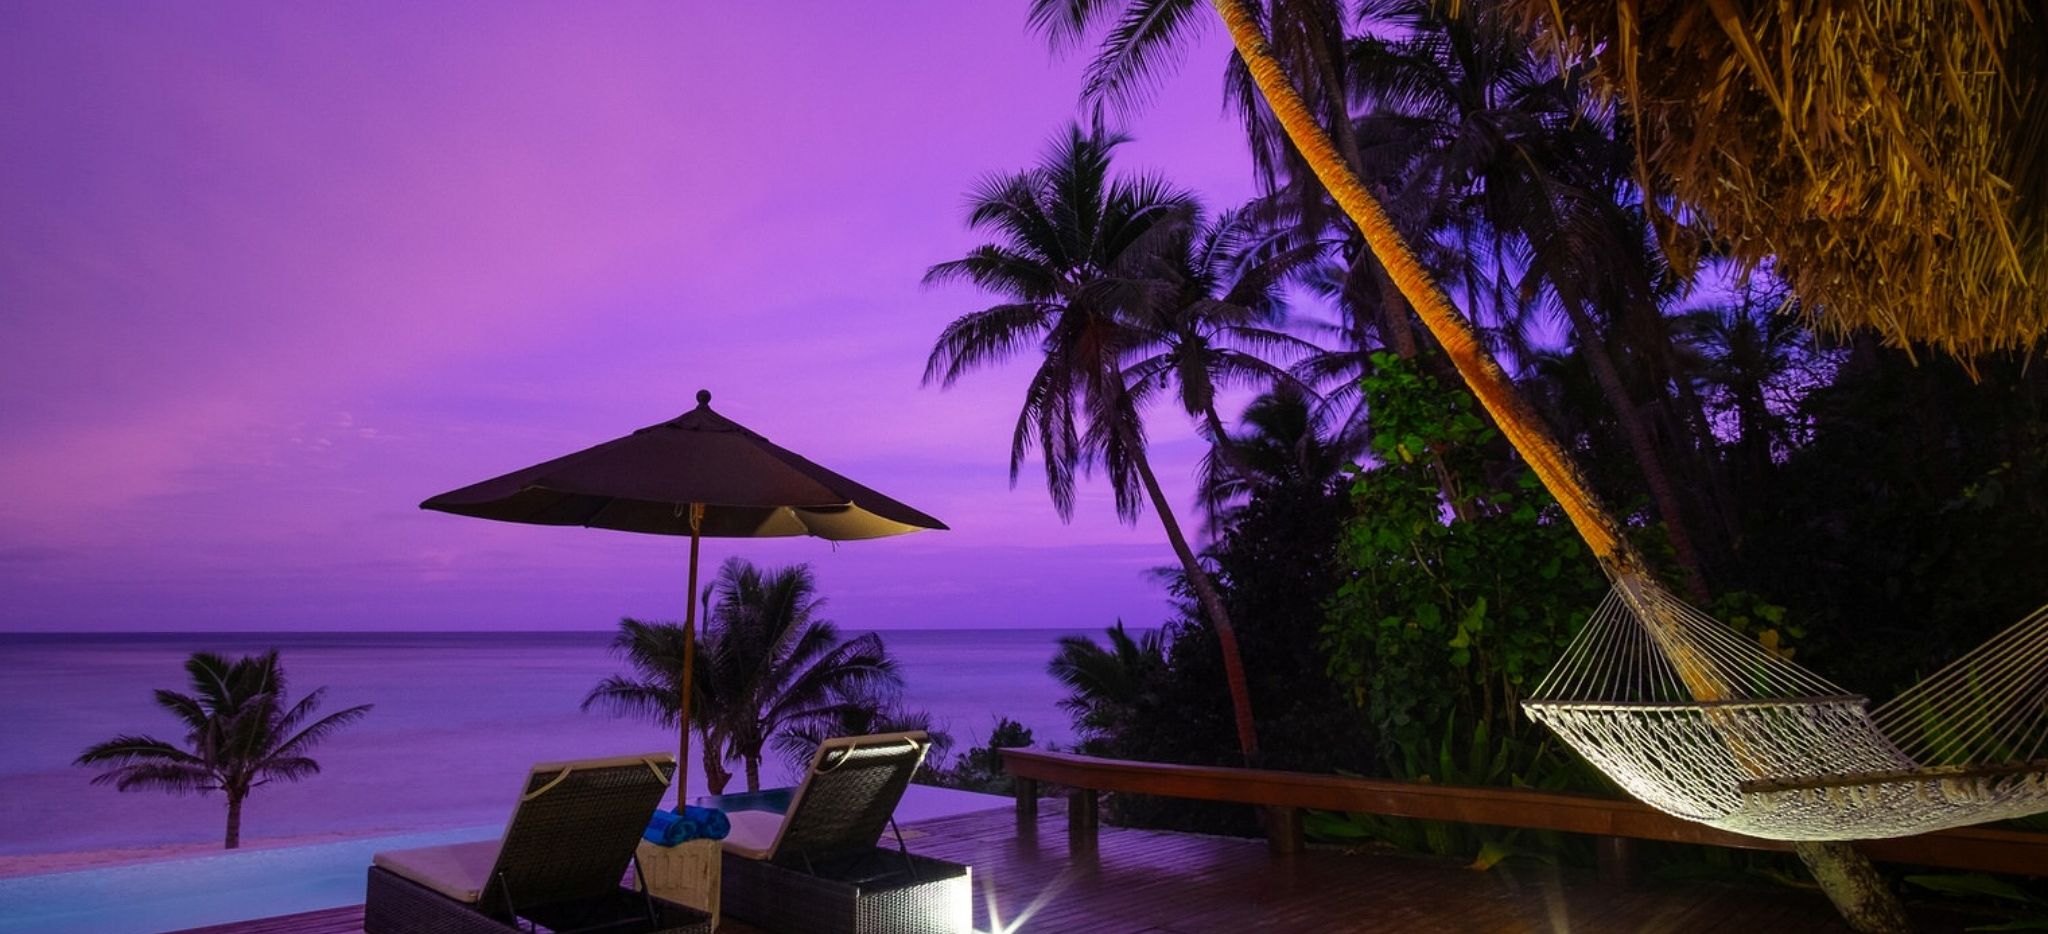 Lilaner Himmel über dem Meer bei Sonnenuntergang von der Terrasse einer Honeymoon Suite im Hotel Yasawa auf Fiji